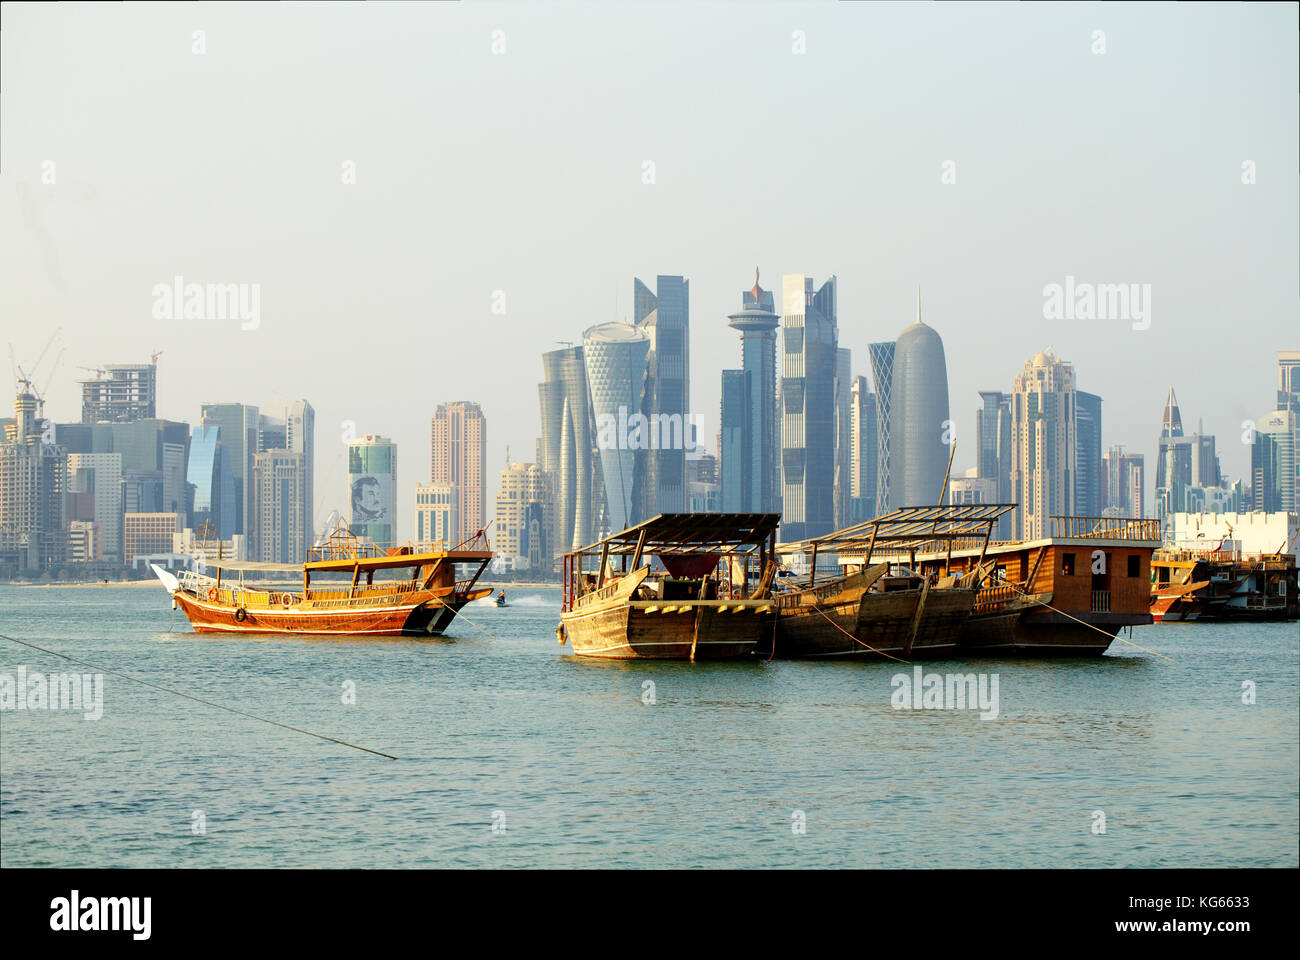 Doha, Katar - November 4, 2017: Blick über die Bucht von Doha. das Image der Emir über einen Turm auf der linken Seite wegen der gcc-Krise verputzt ist. Stockfoto